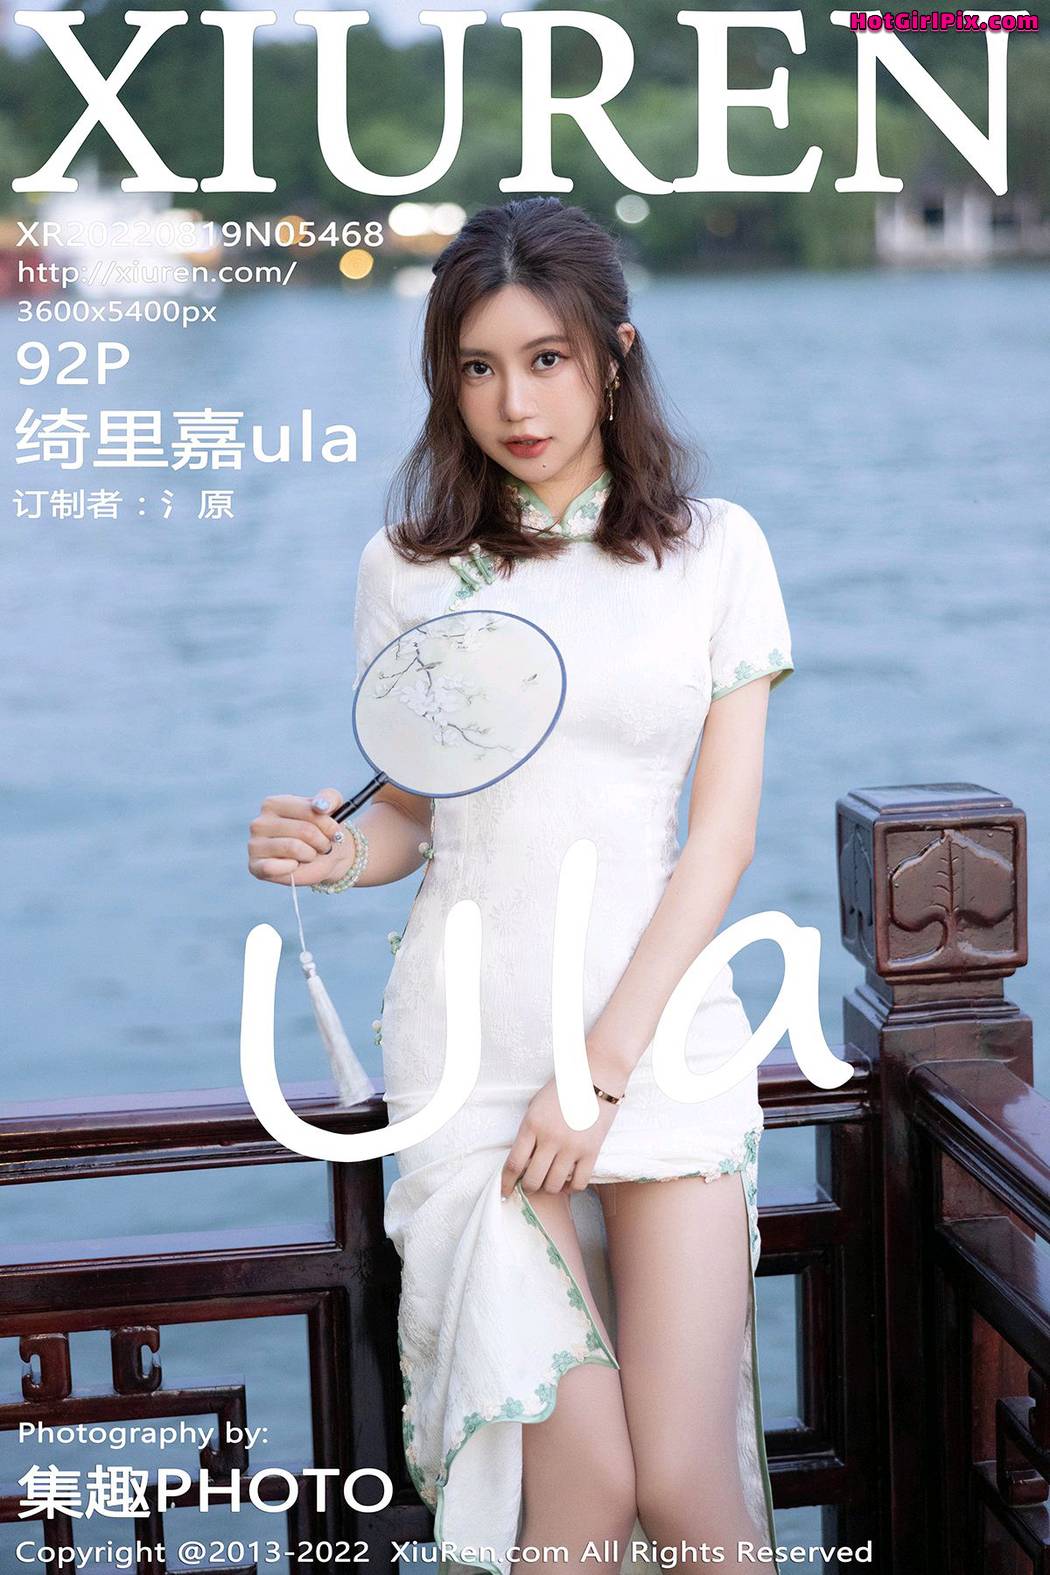 [XIUREN] No.5468 Qi Li Jia 绮里嘉ula Cover Photo